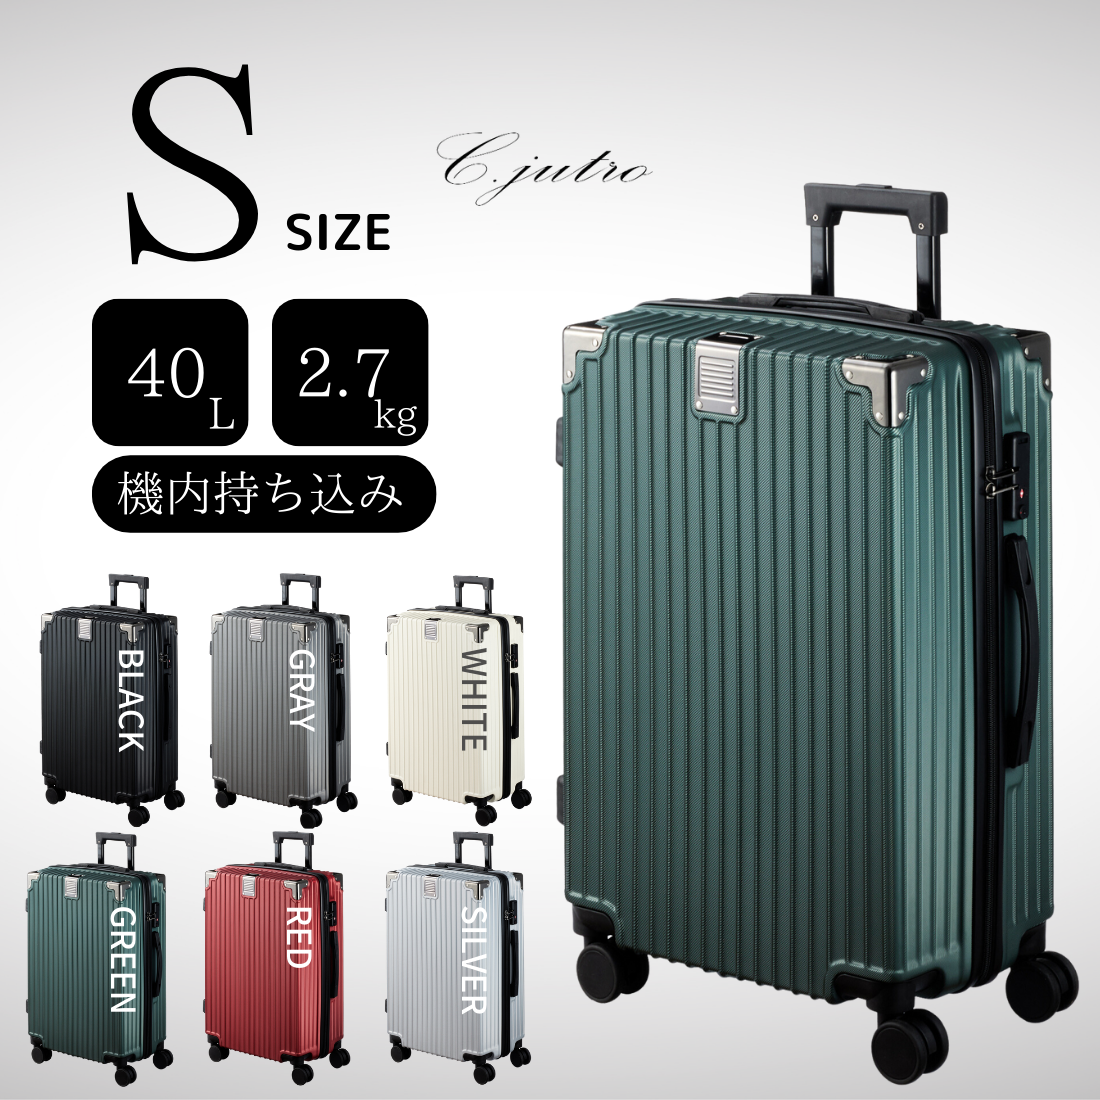 【C.jutro 日本企業企画】スーツケース 6色 機内持ち込み可能 ファスナータイプ Sサイズ